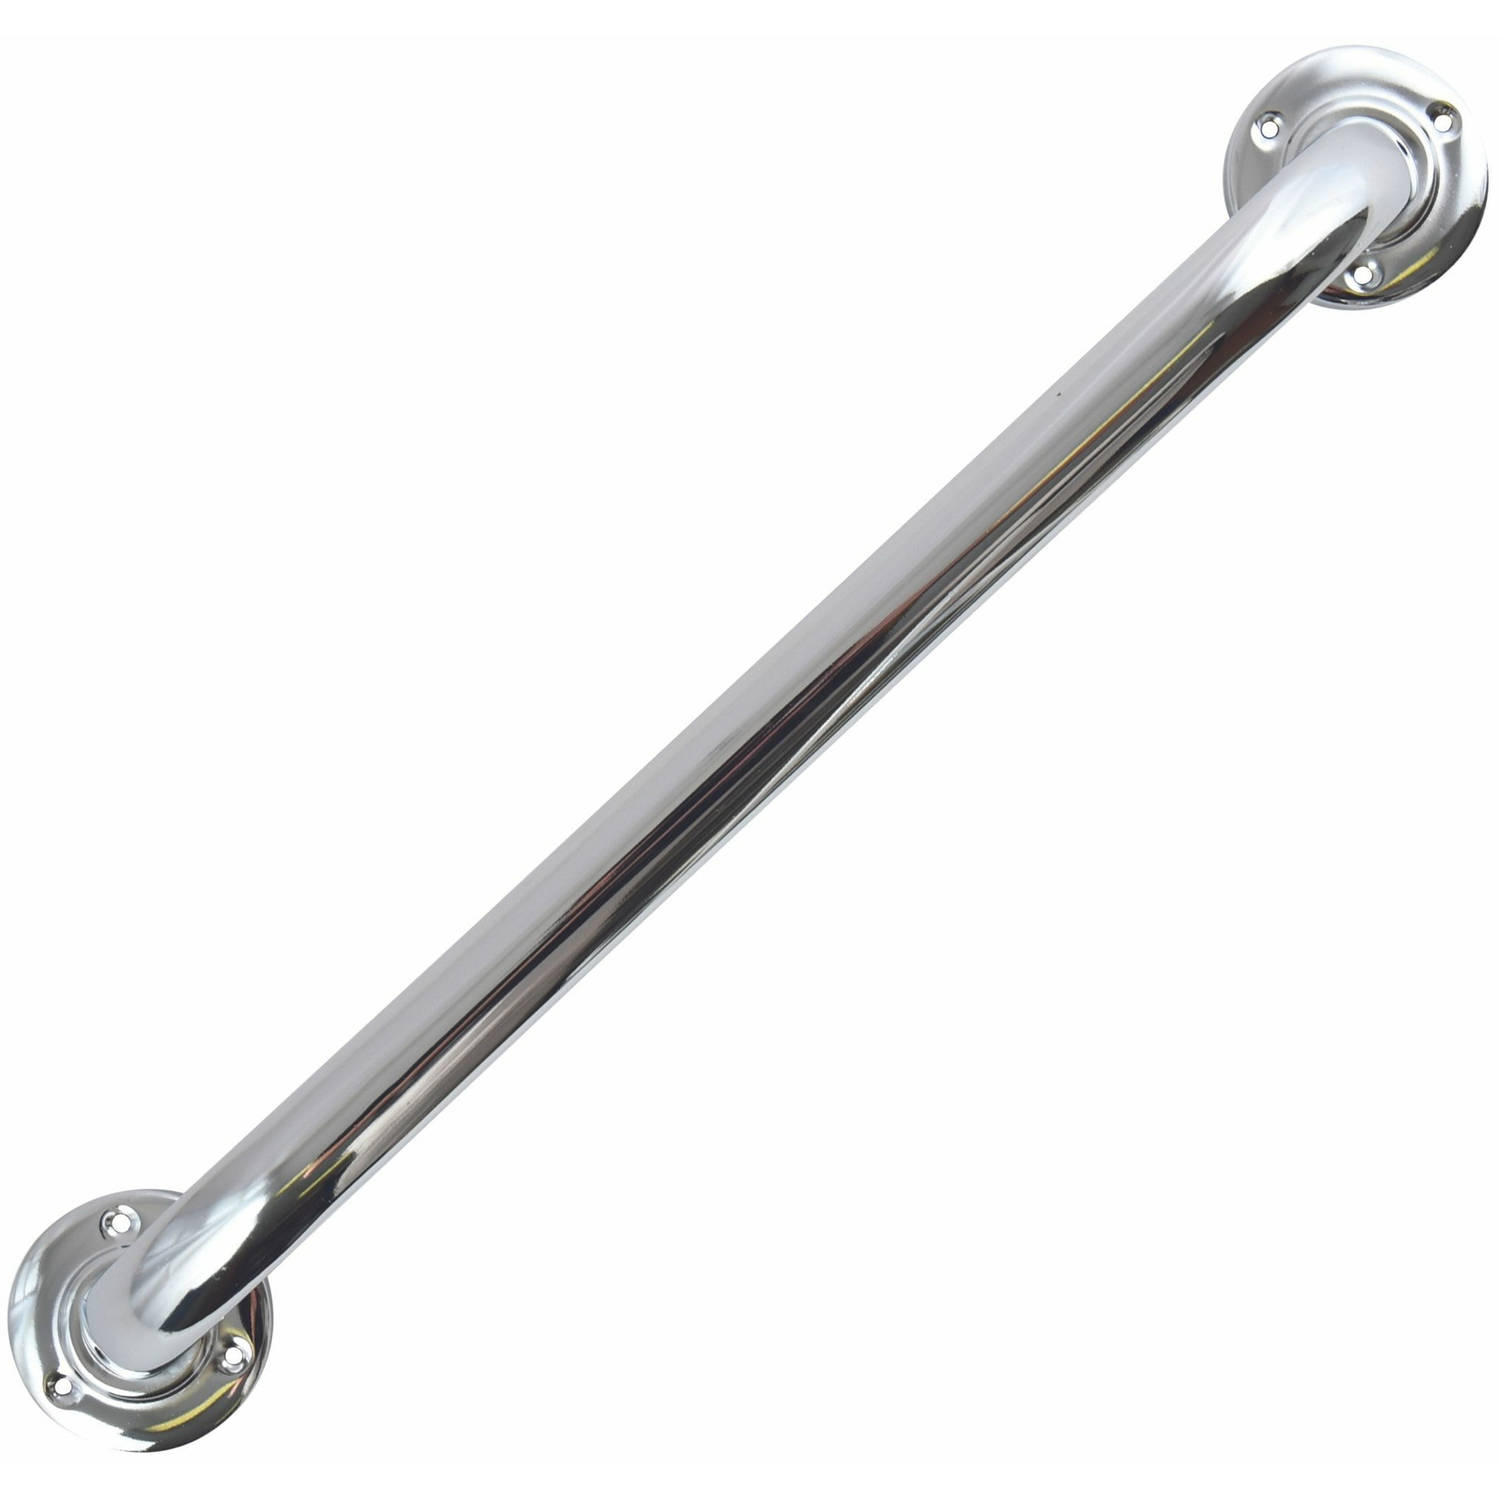 MSV Badkamer/douche wand/muur handgreep - rvs metaal - zilver - 60 cm - Extra houvast beugel